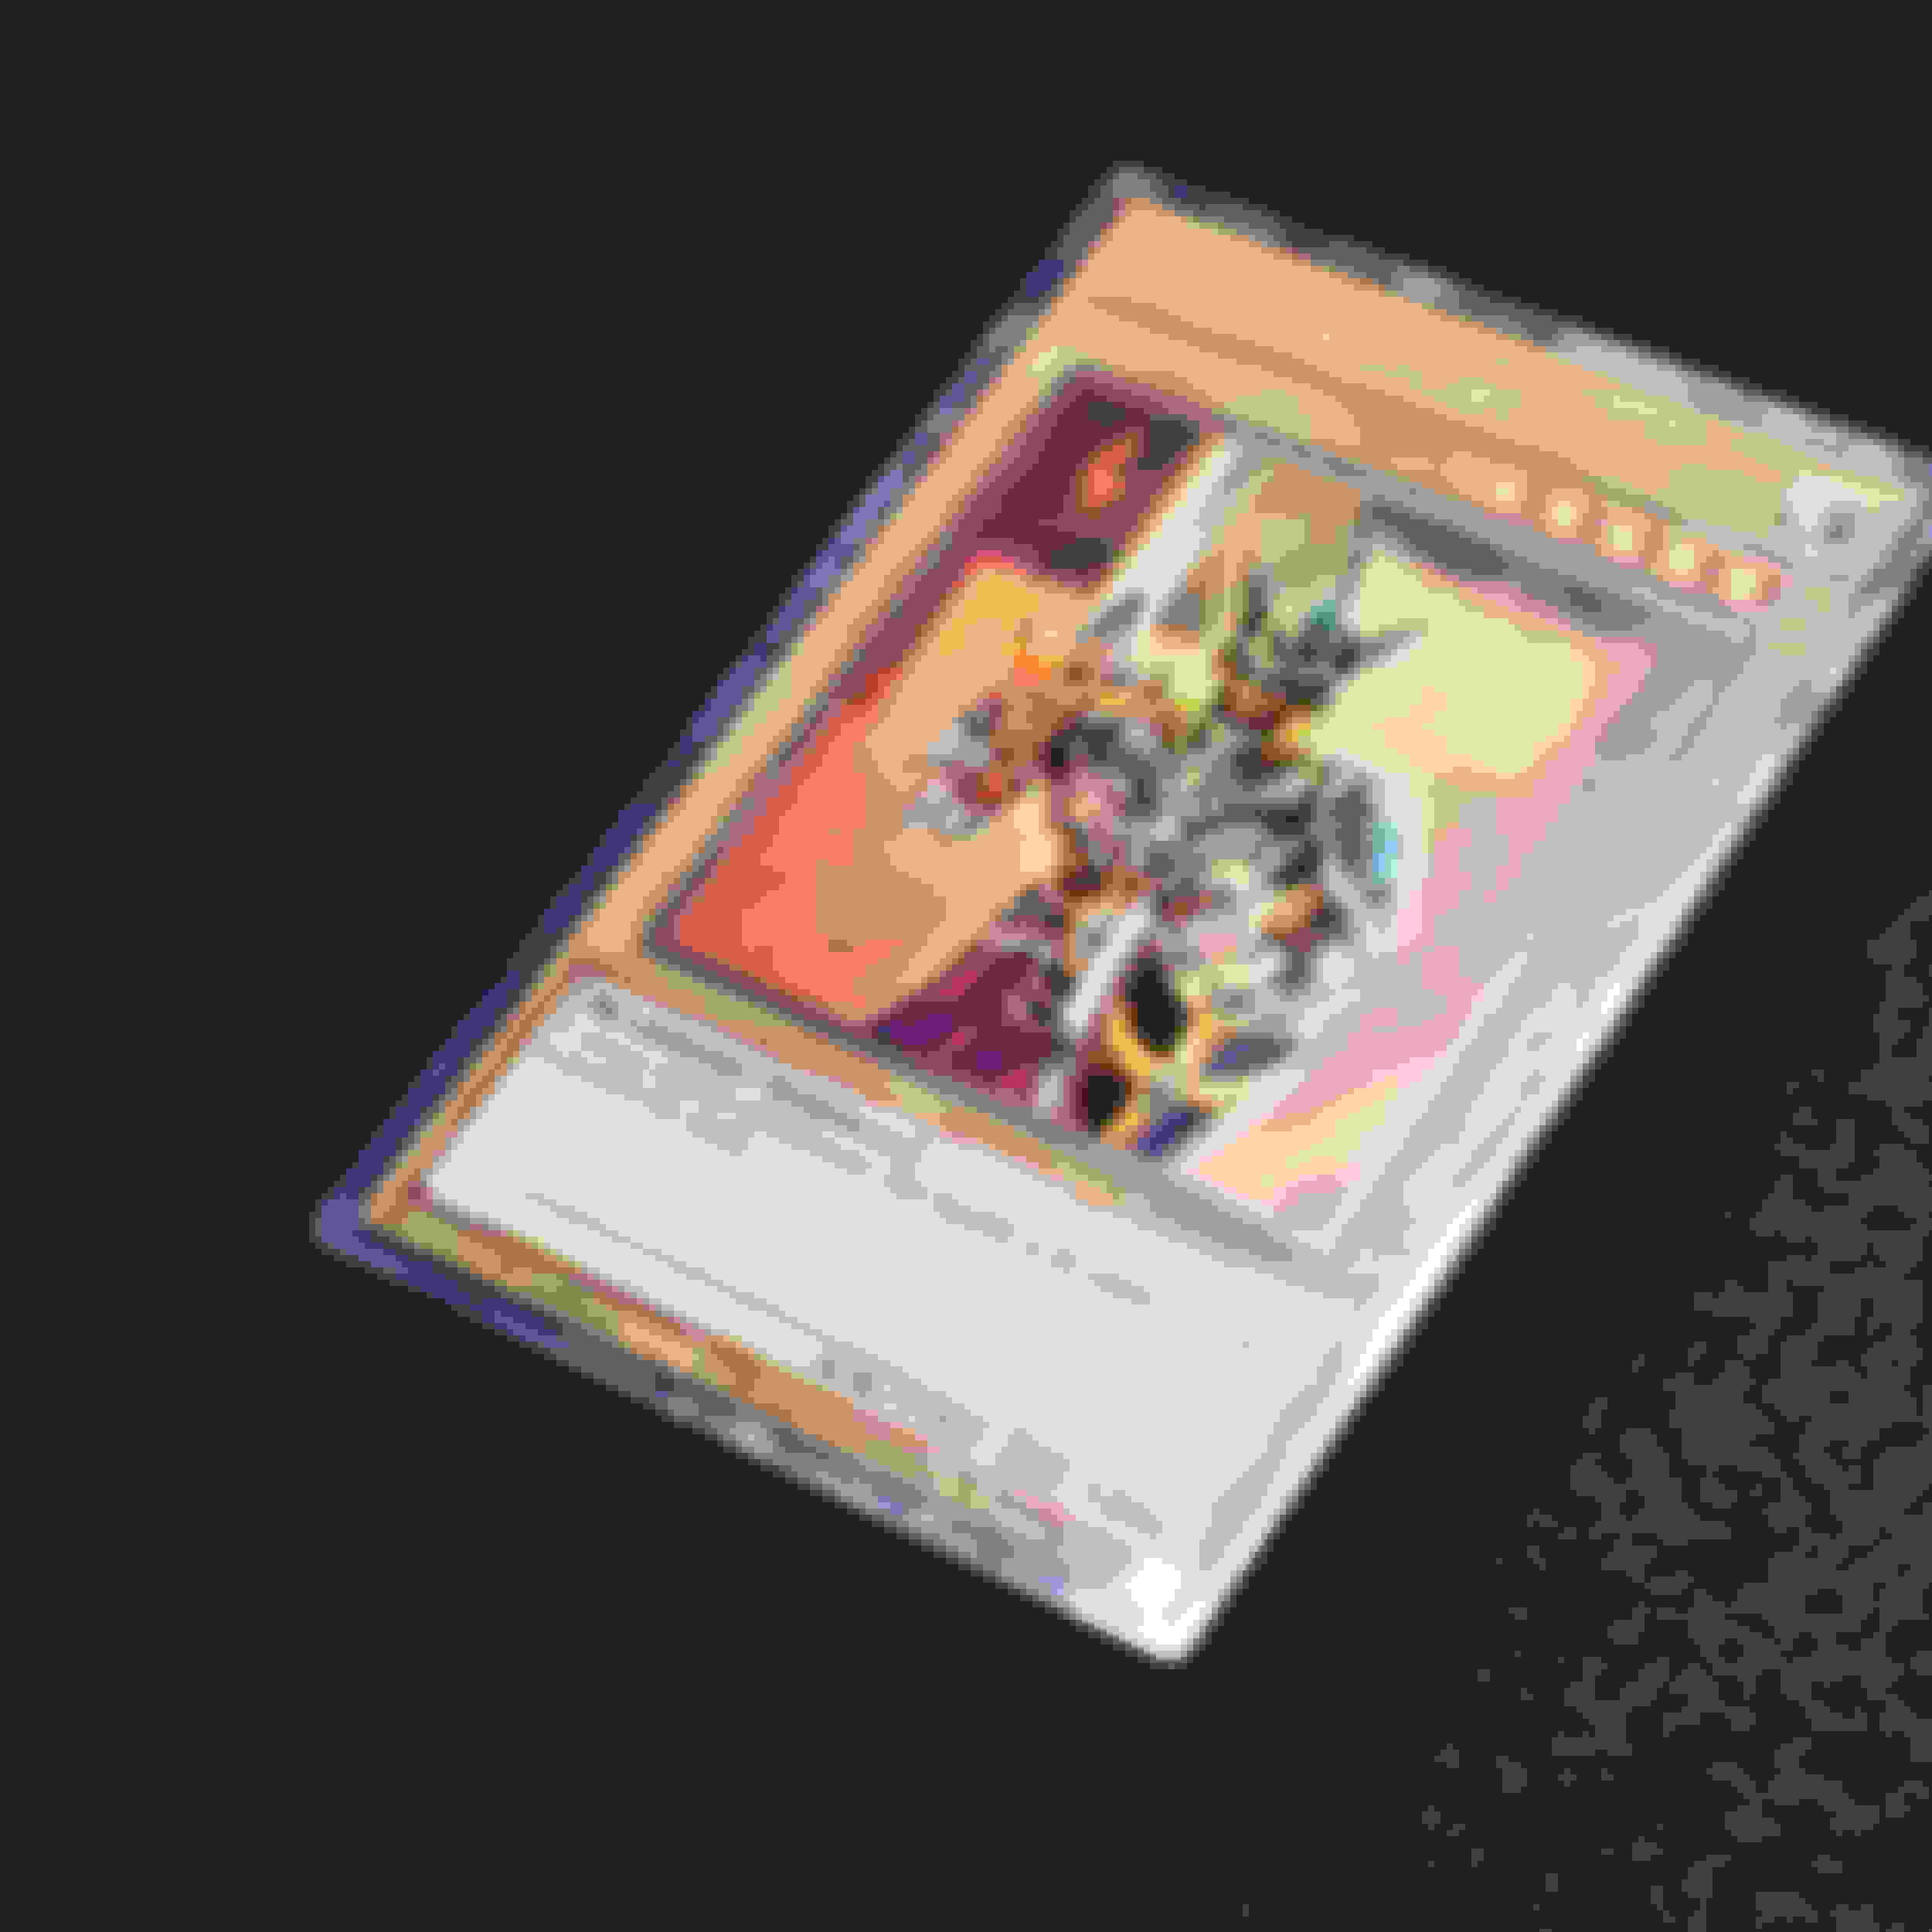 遊戯王 英語版 ジャックスナイト コレクターズレア - シングルカード